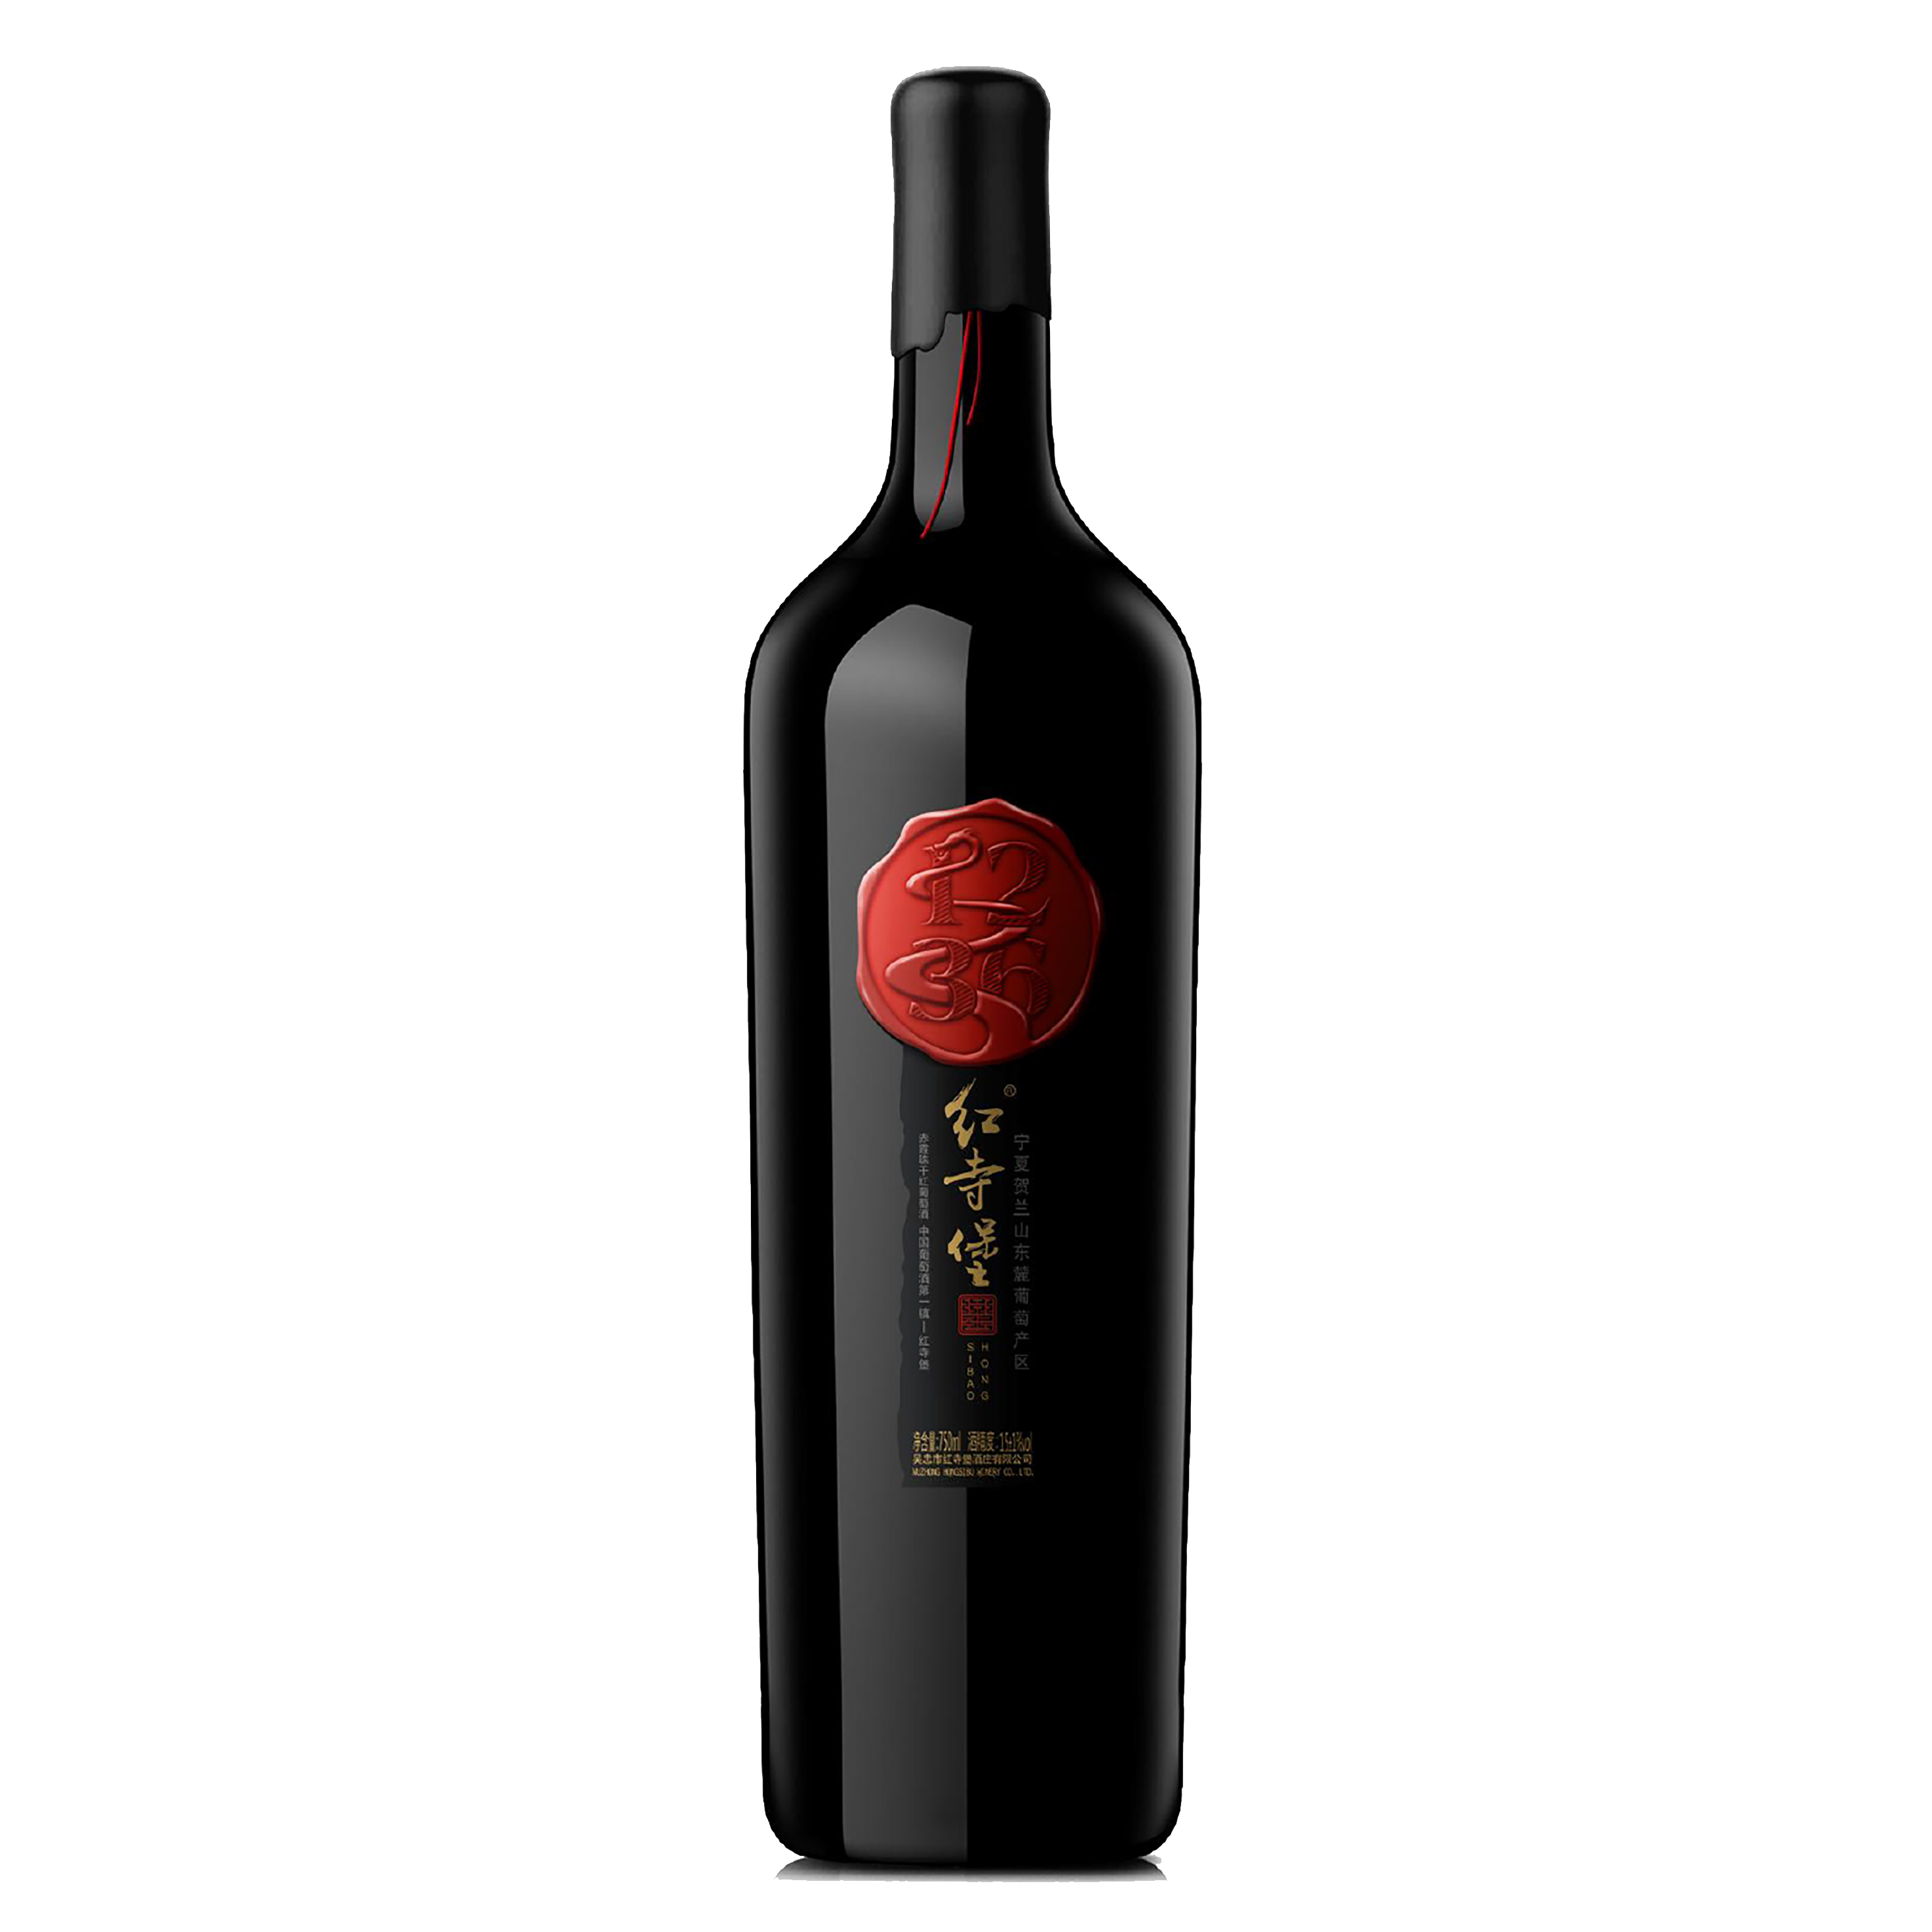 红寺堡·2015橡木桶窖藏赤霞珠干红葡萄酒